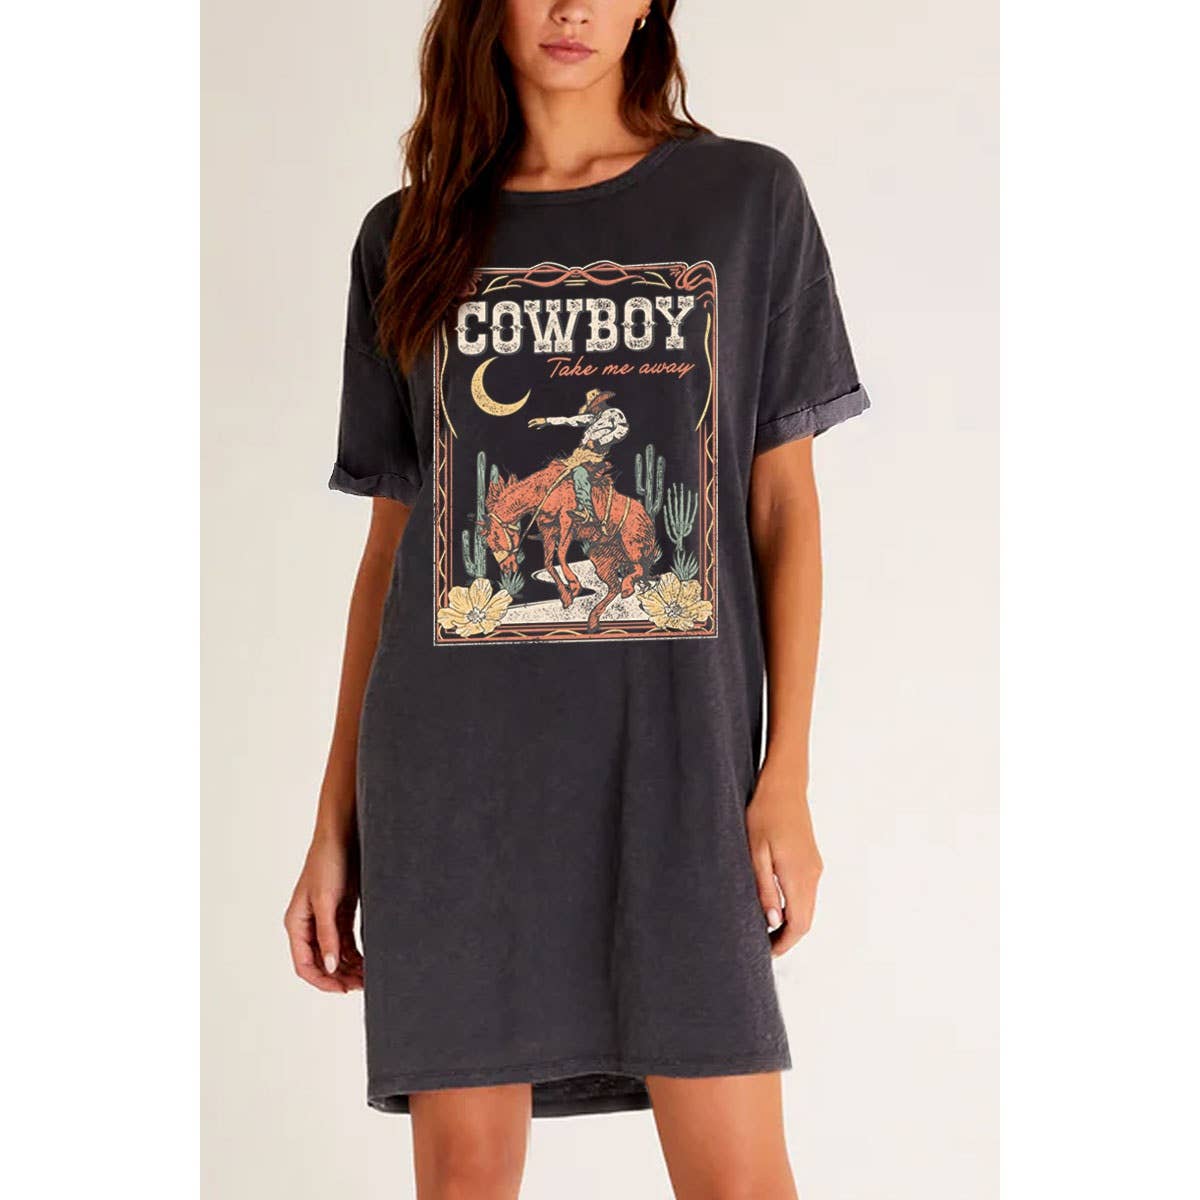 Cowboy Take Me Away Graphic T-Shirt Dress - Mineral Black